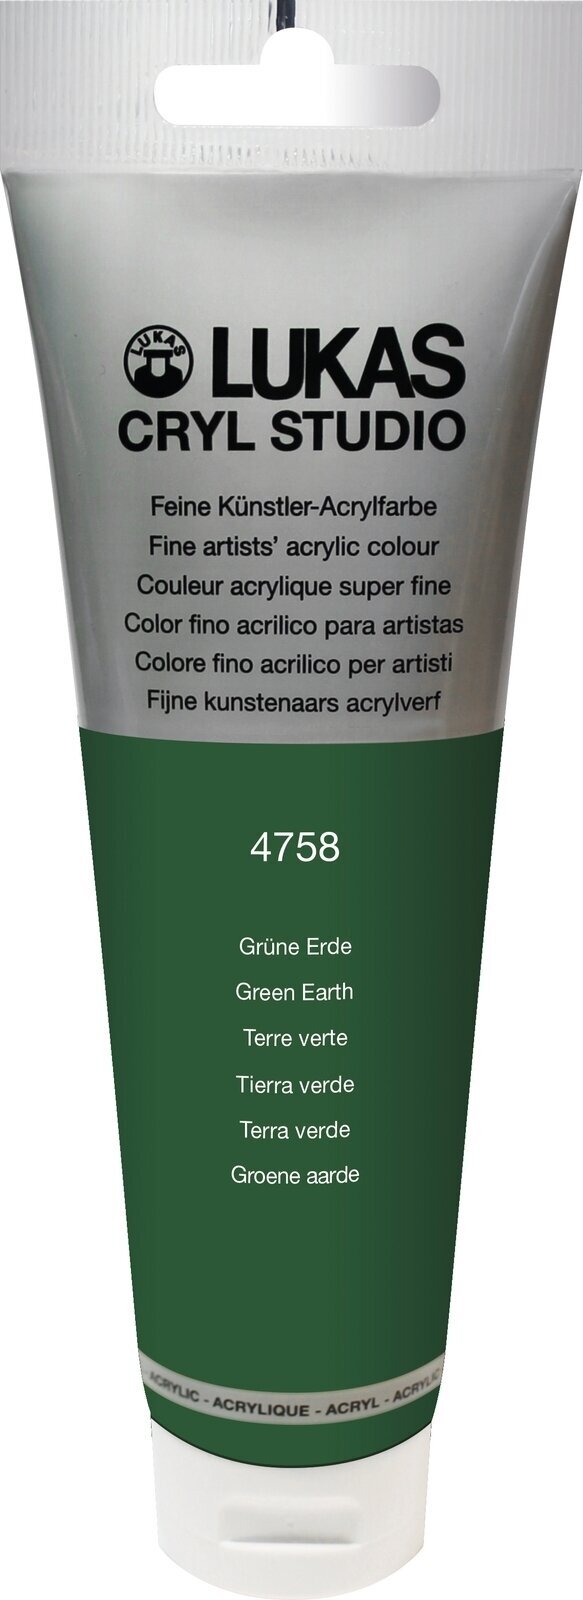 Akrylová barva Lukas Cryl Studio Akrylová barva 125 ml Green Earth